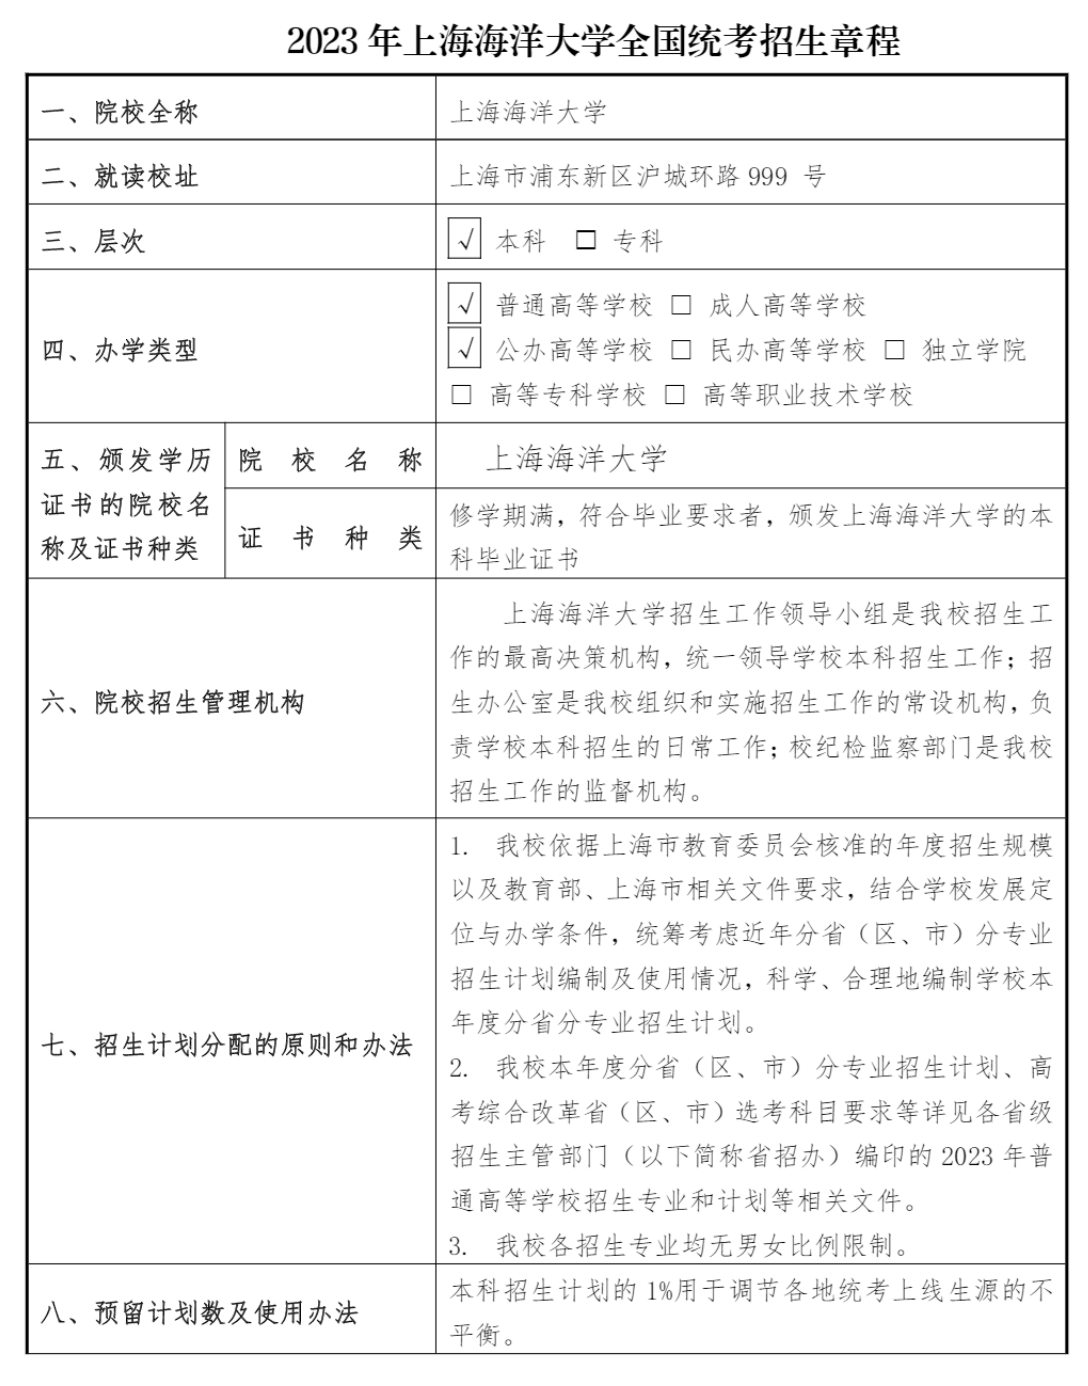 上海海洋大学2023年全国统考招生章程